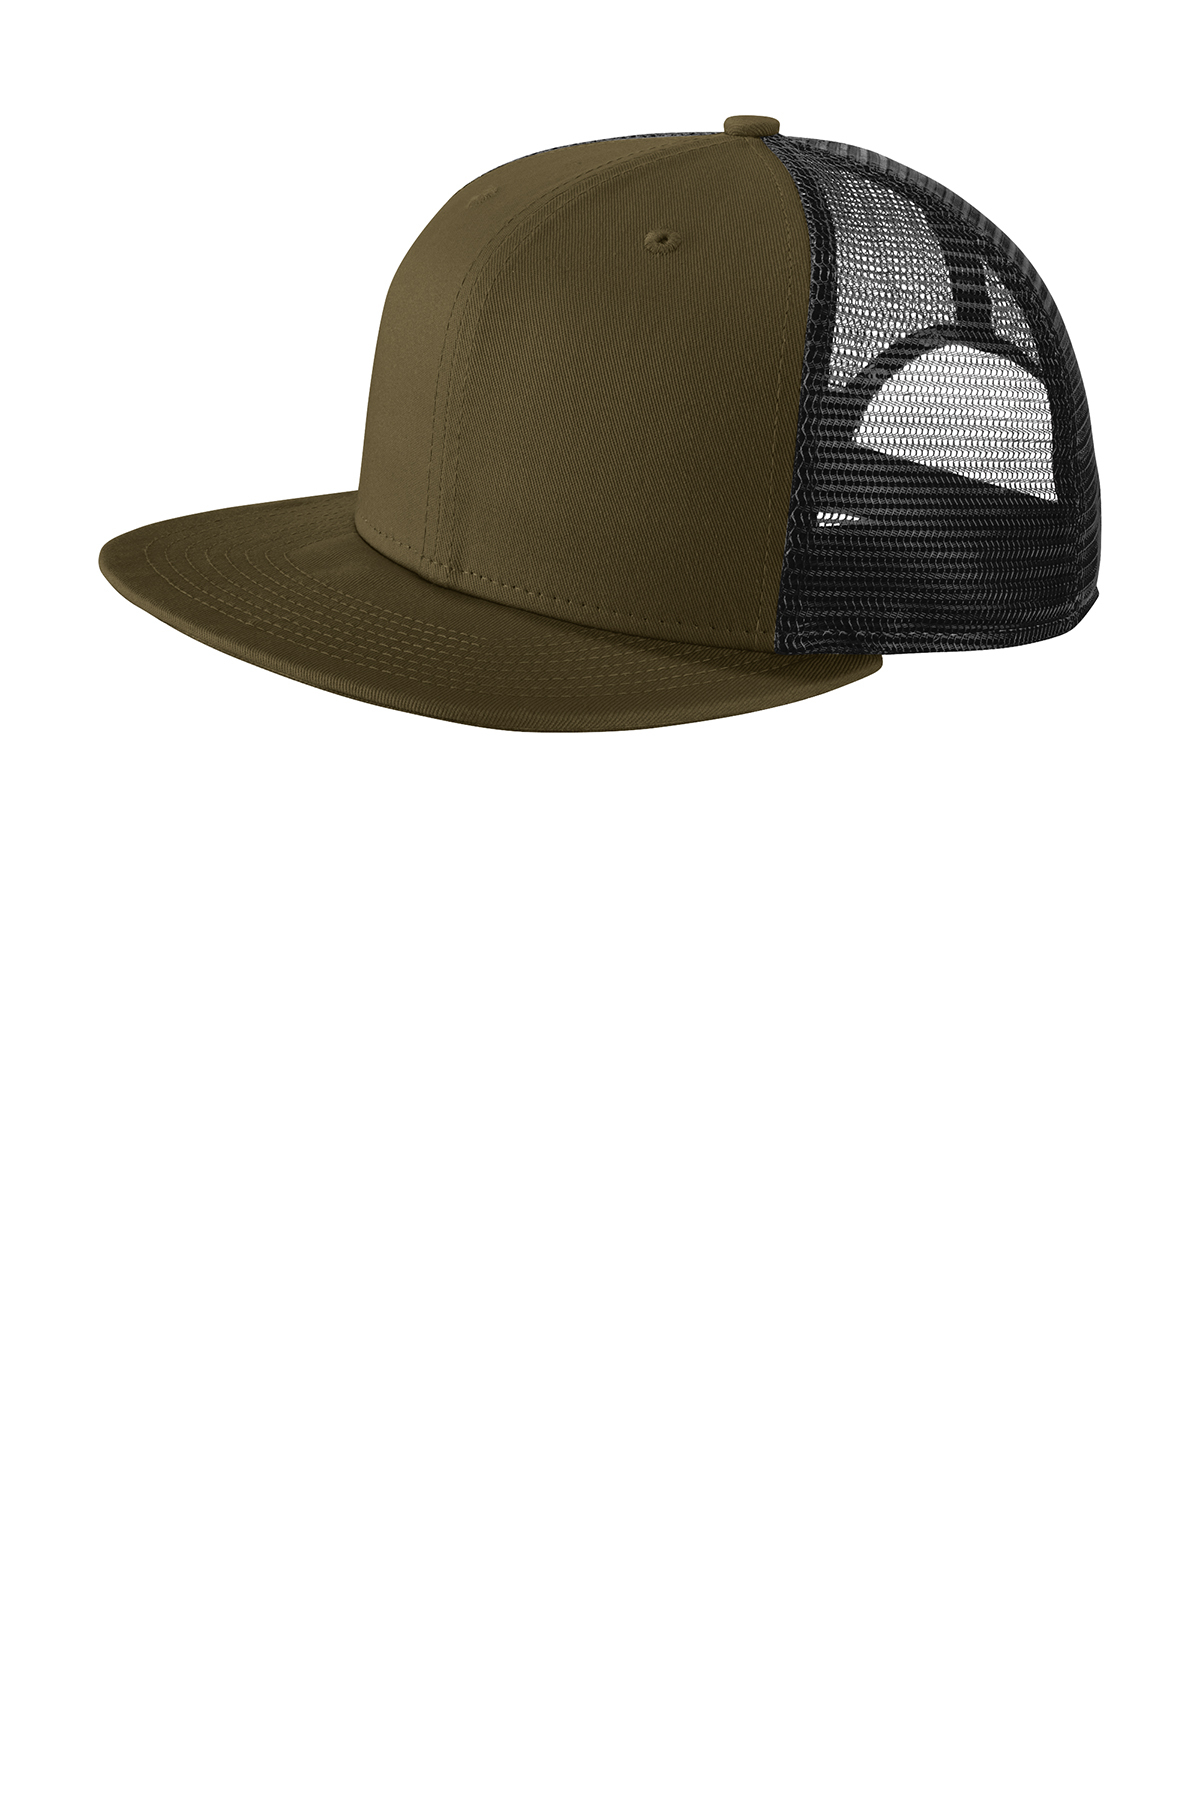 Your Custom Caps | | Cover Trucker Trucker Head Hats